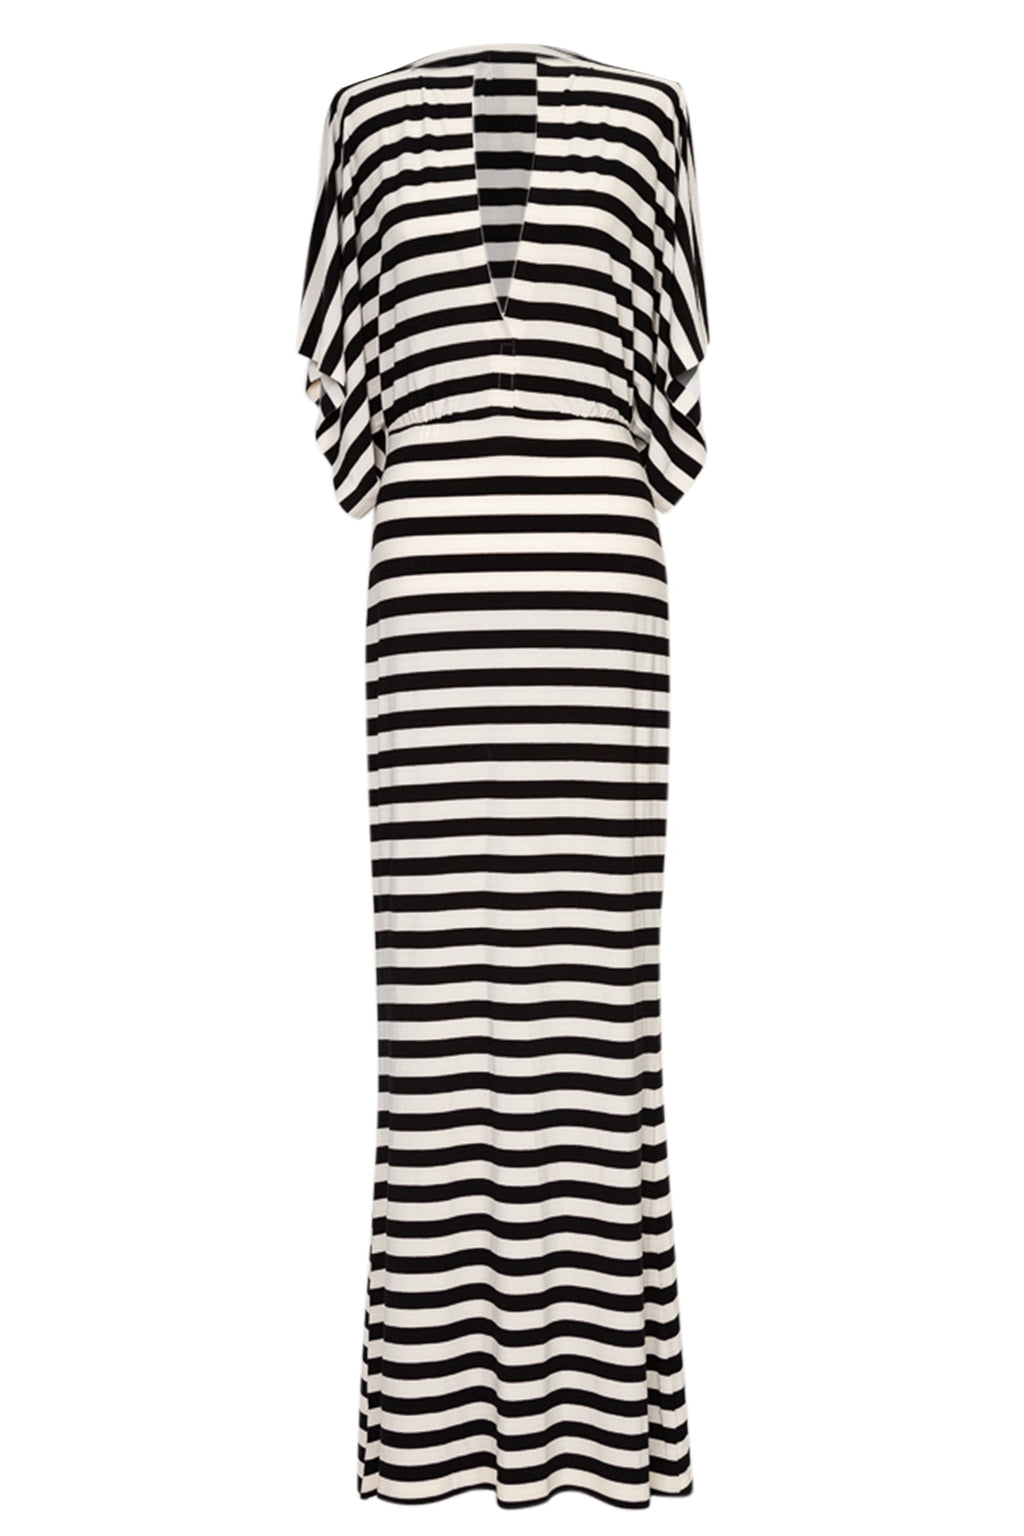 Norma Kamali 'Obie' Striped Stretch-Jersey Dress – Dora Maar